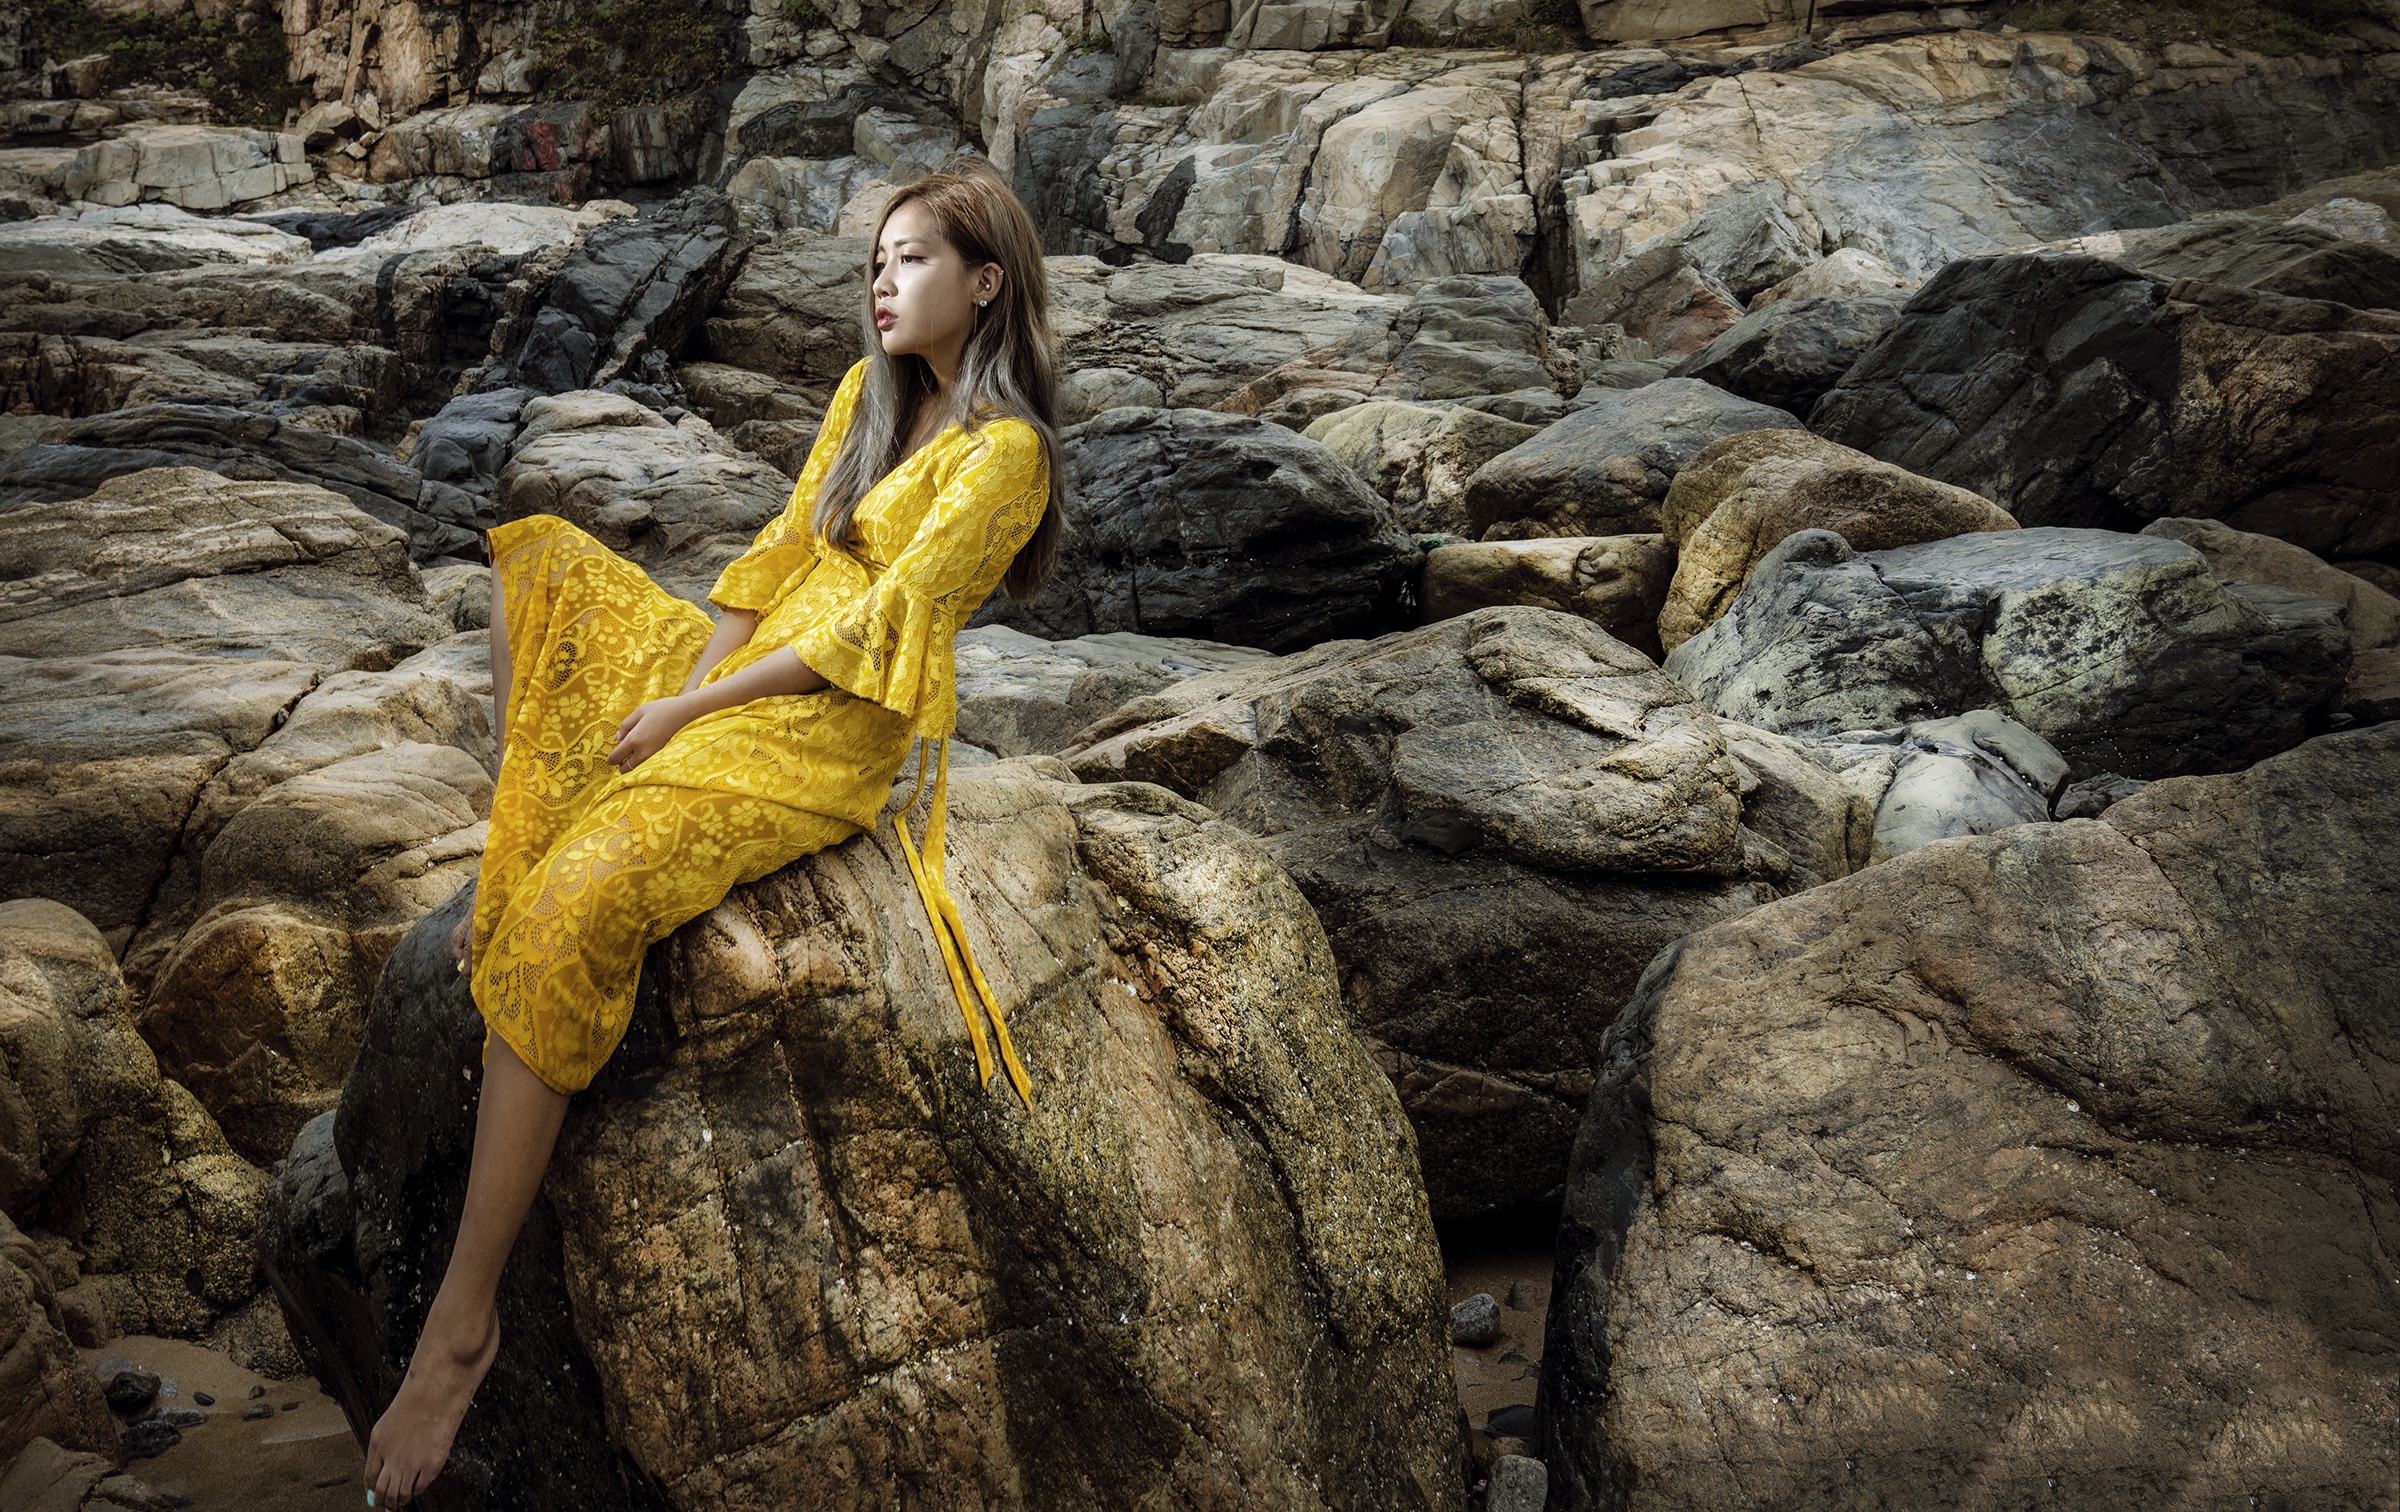 Asian Model Women Long Hair Yellow Dress Sitting Rocks Earring Brunette Looking Into The Distance 2400x1512